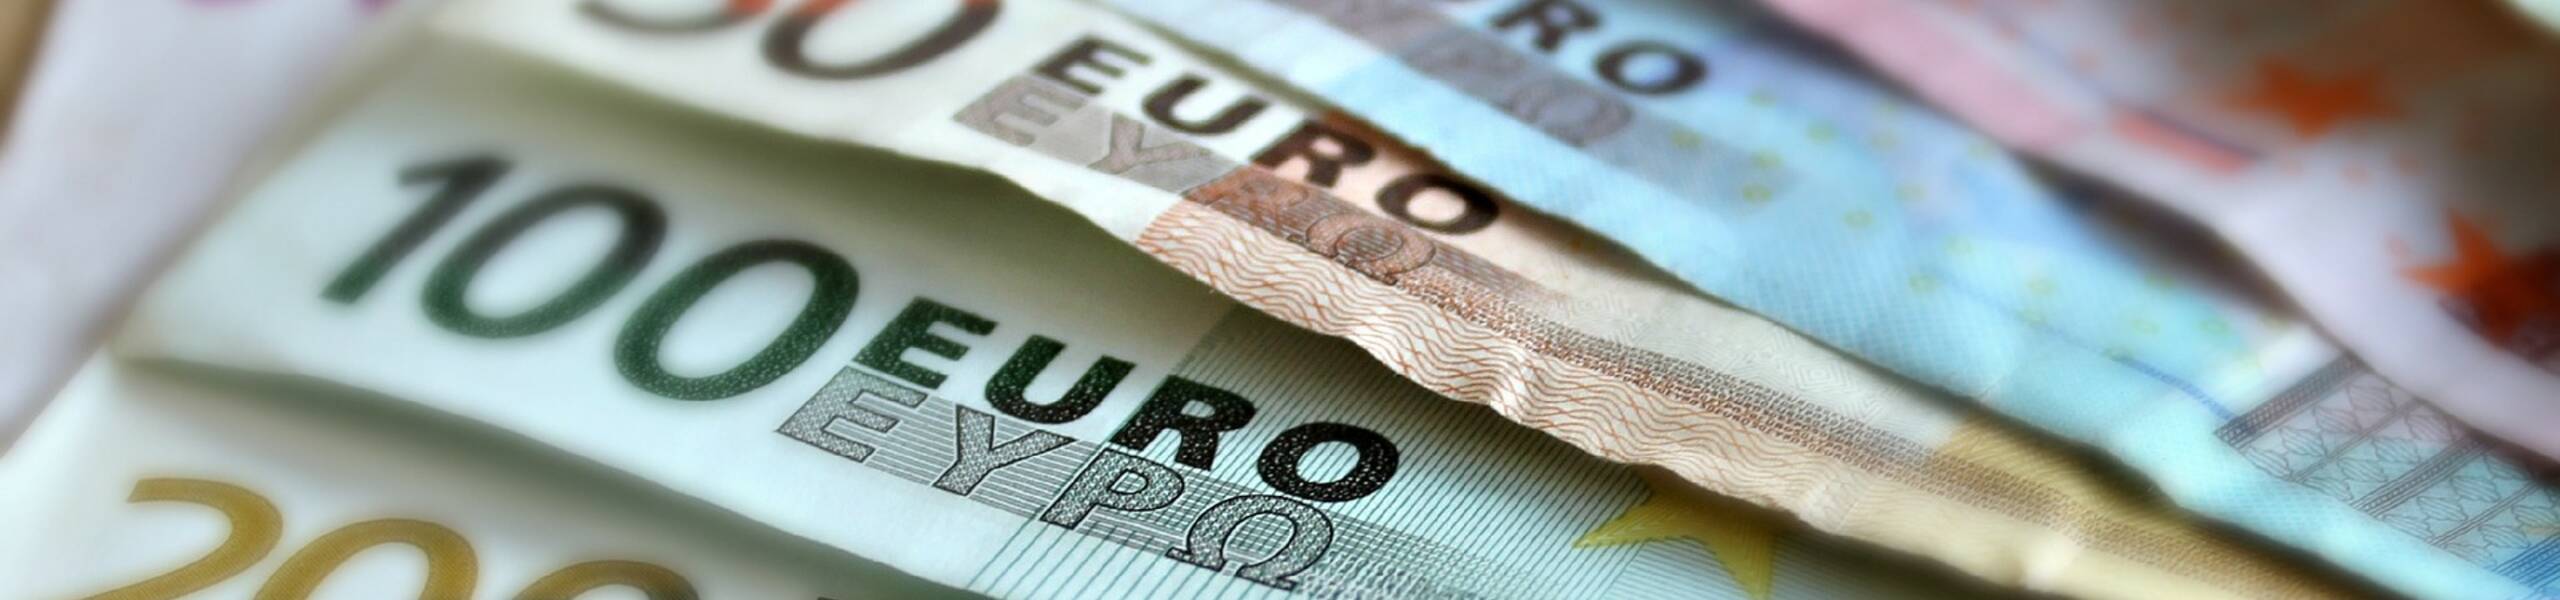 EUR/AUD: มีความผันผวนสองทางระวังควรติดตาม